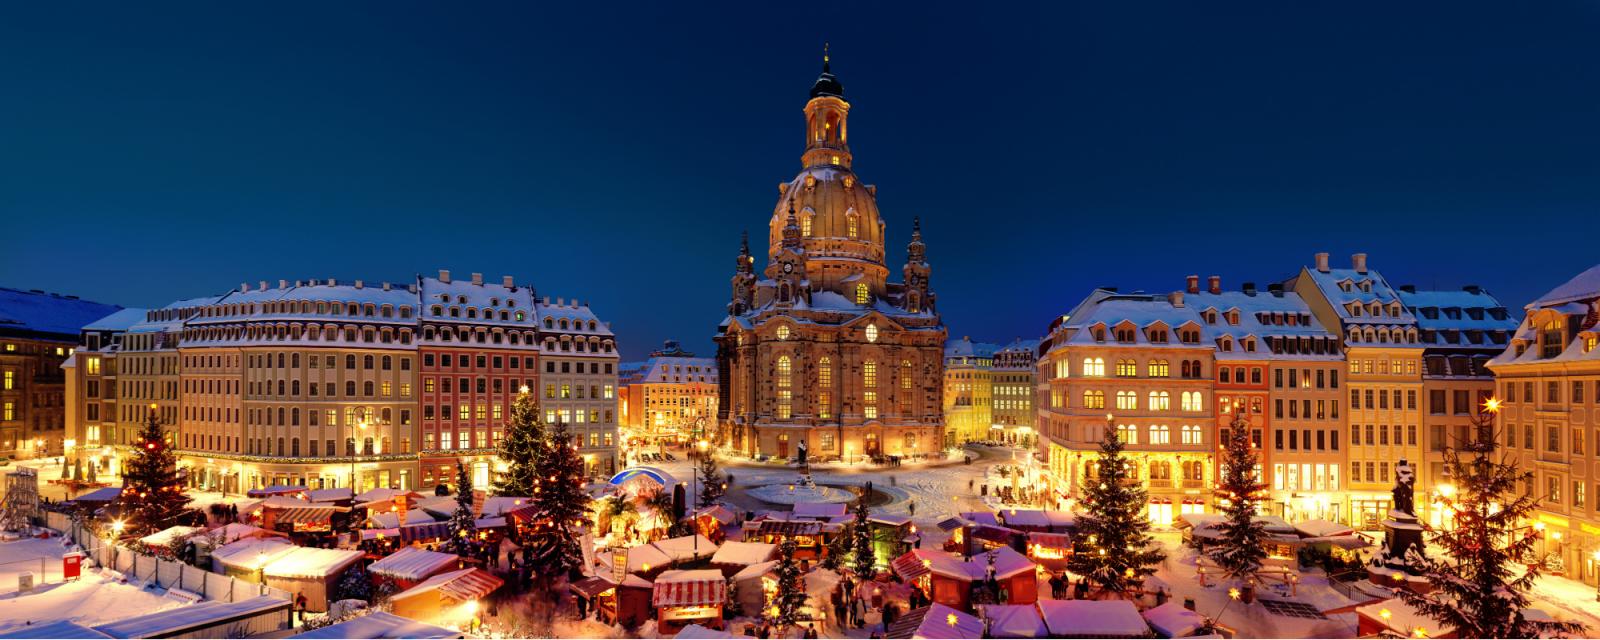 Dresden: de stad aan de Elbe schittert tijdens kerst! 